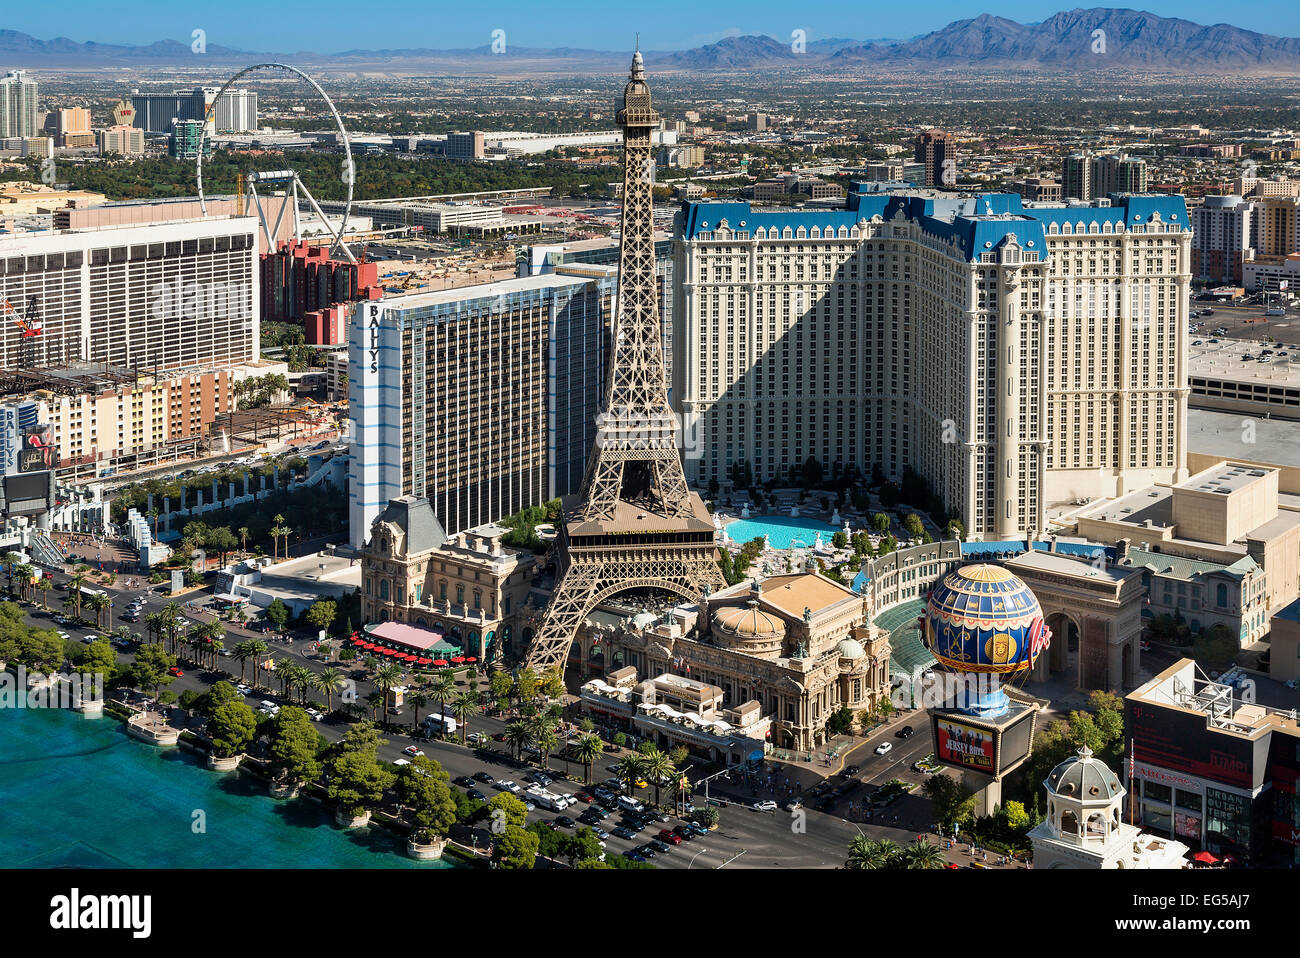 USA, Nevada, Las Vegas, Paris Las Vegas Hotel. Stock Photo